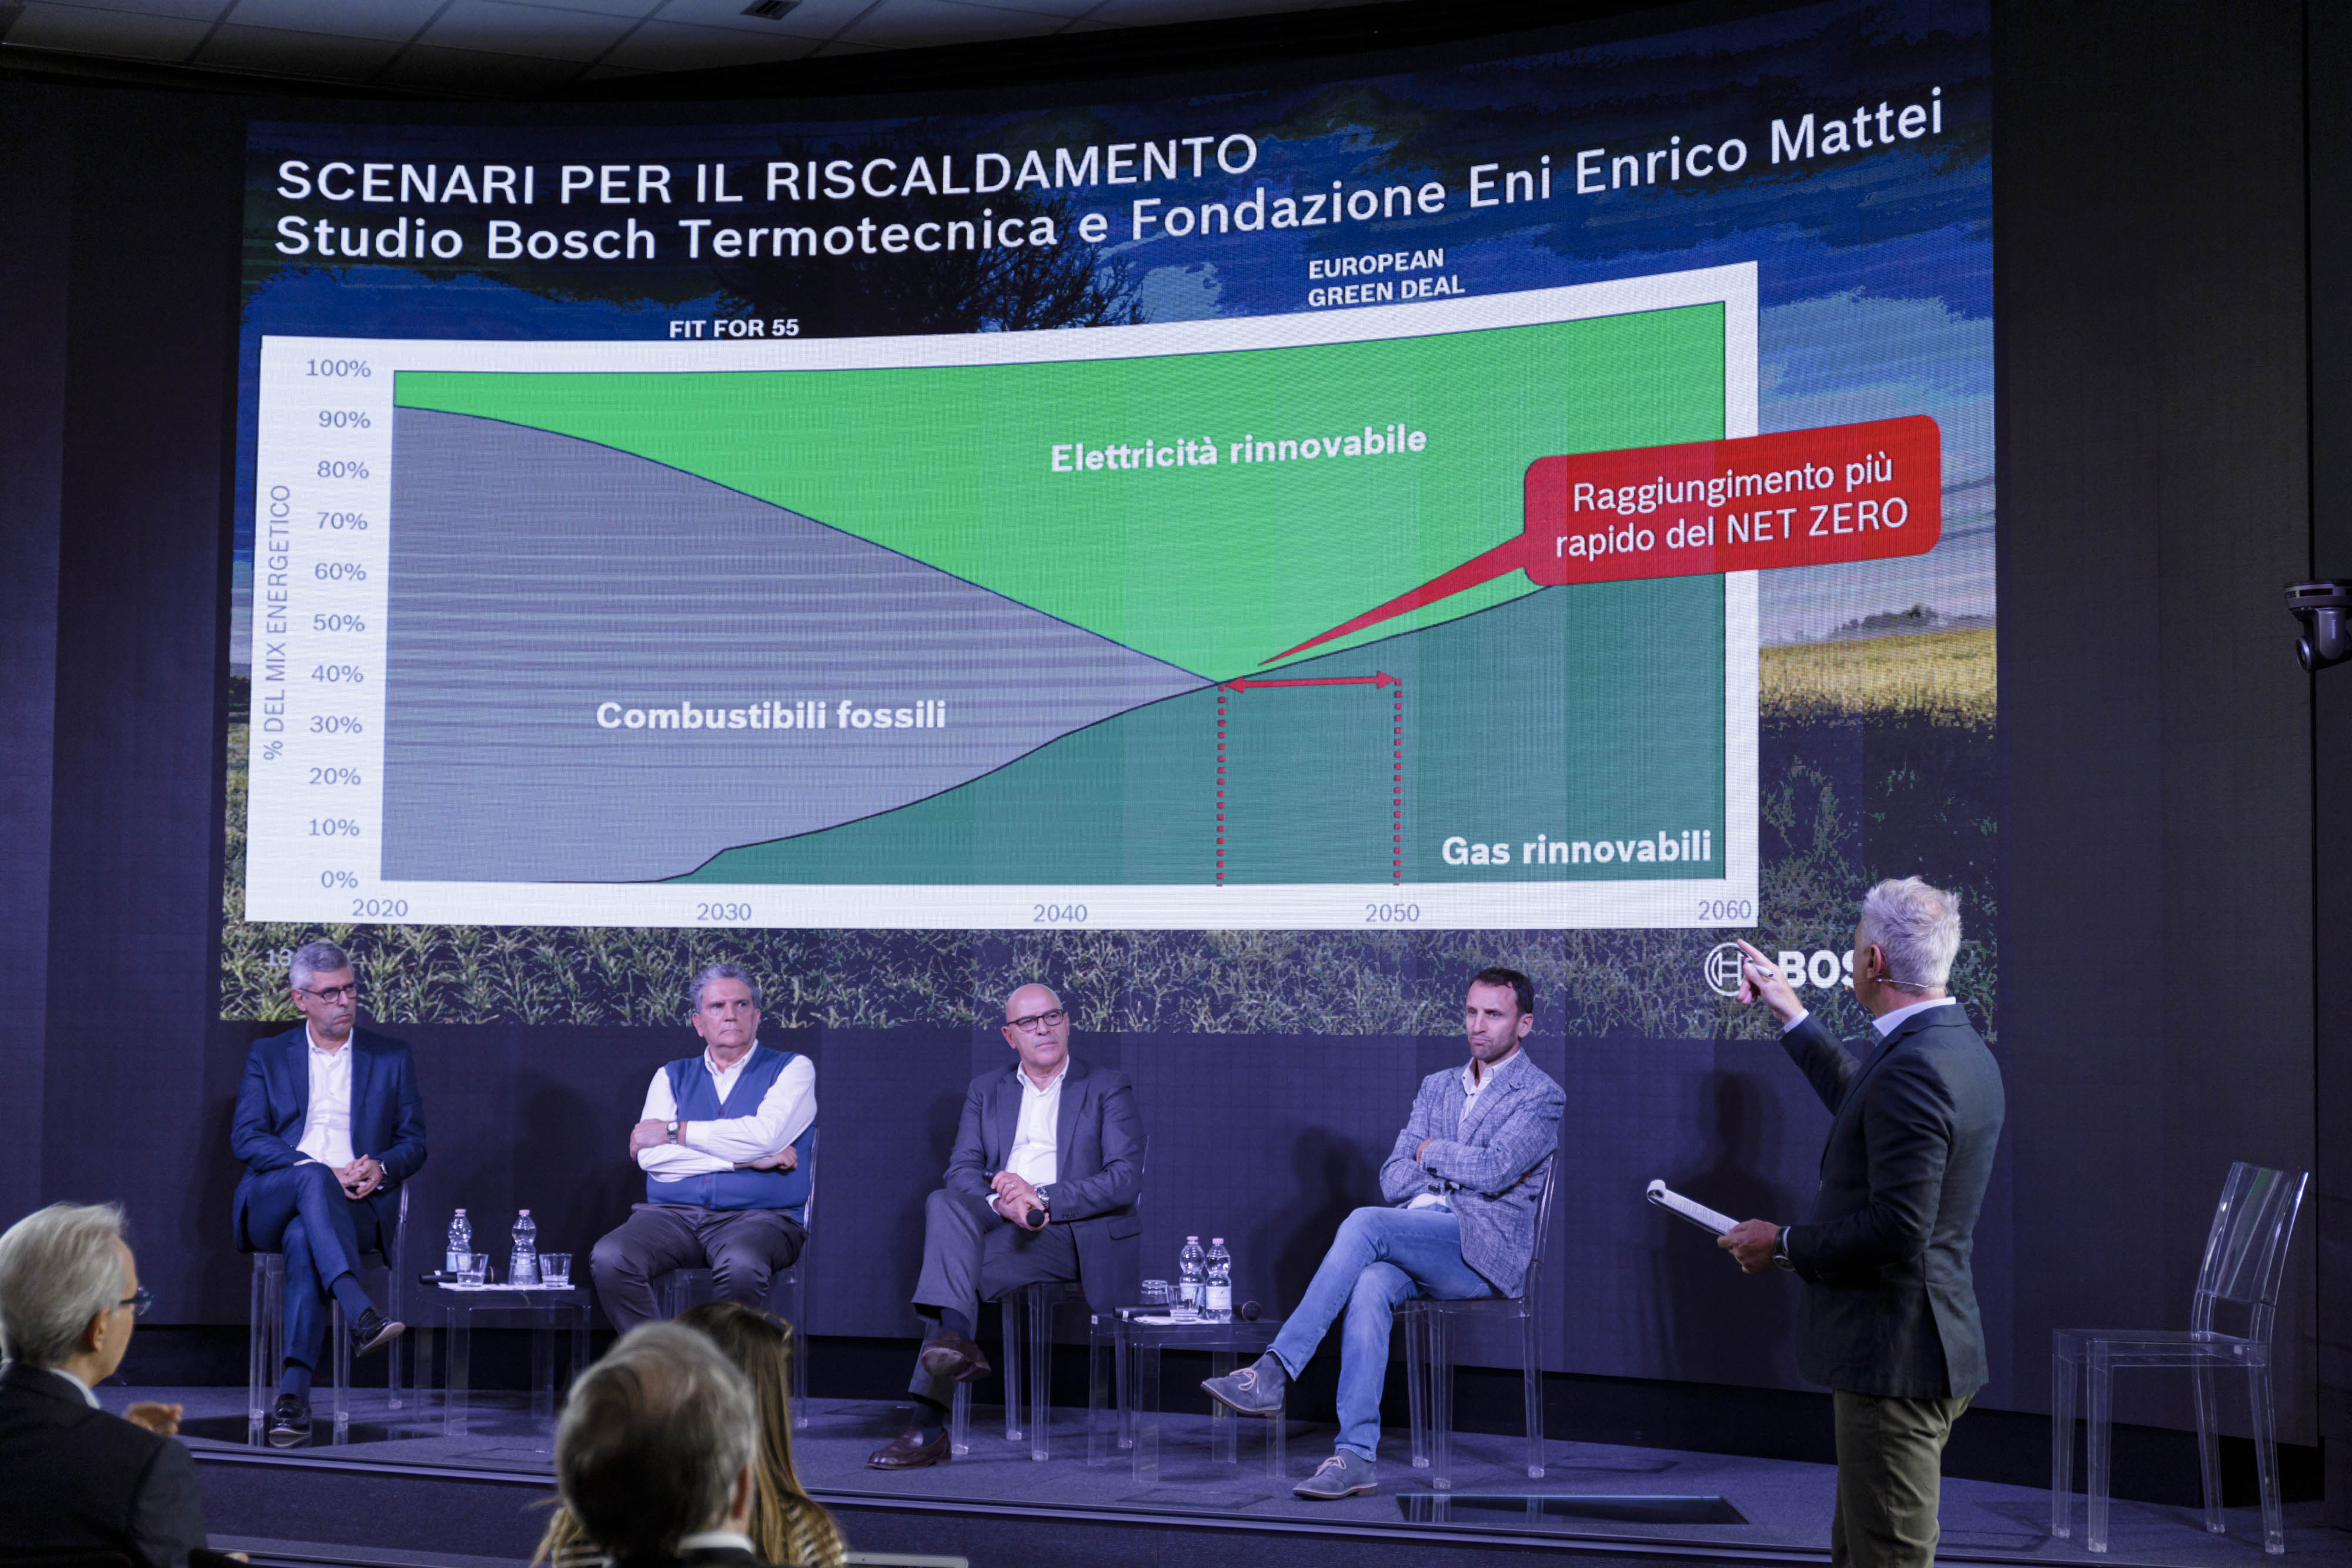 Comportamento sostenibile dei consumatori italiani: sì alle fonti energetiche rinnovabili come l’idrogeno